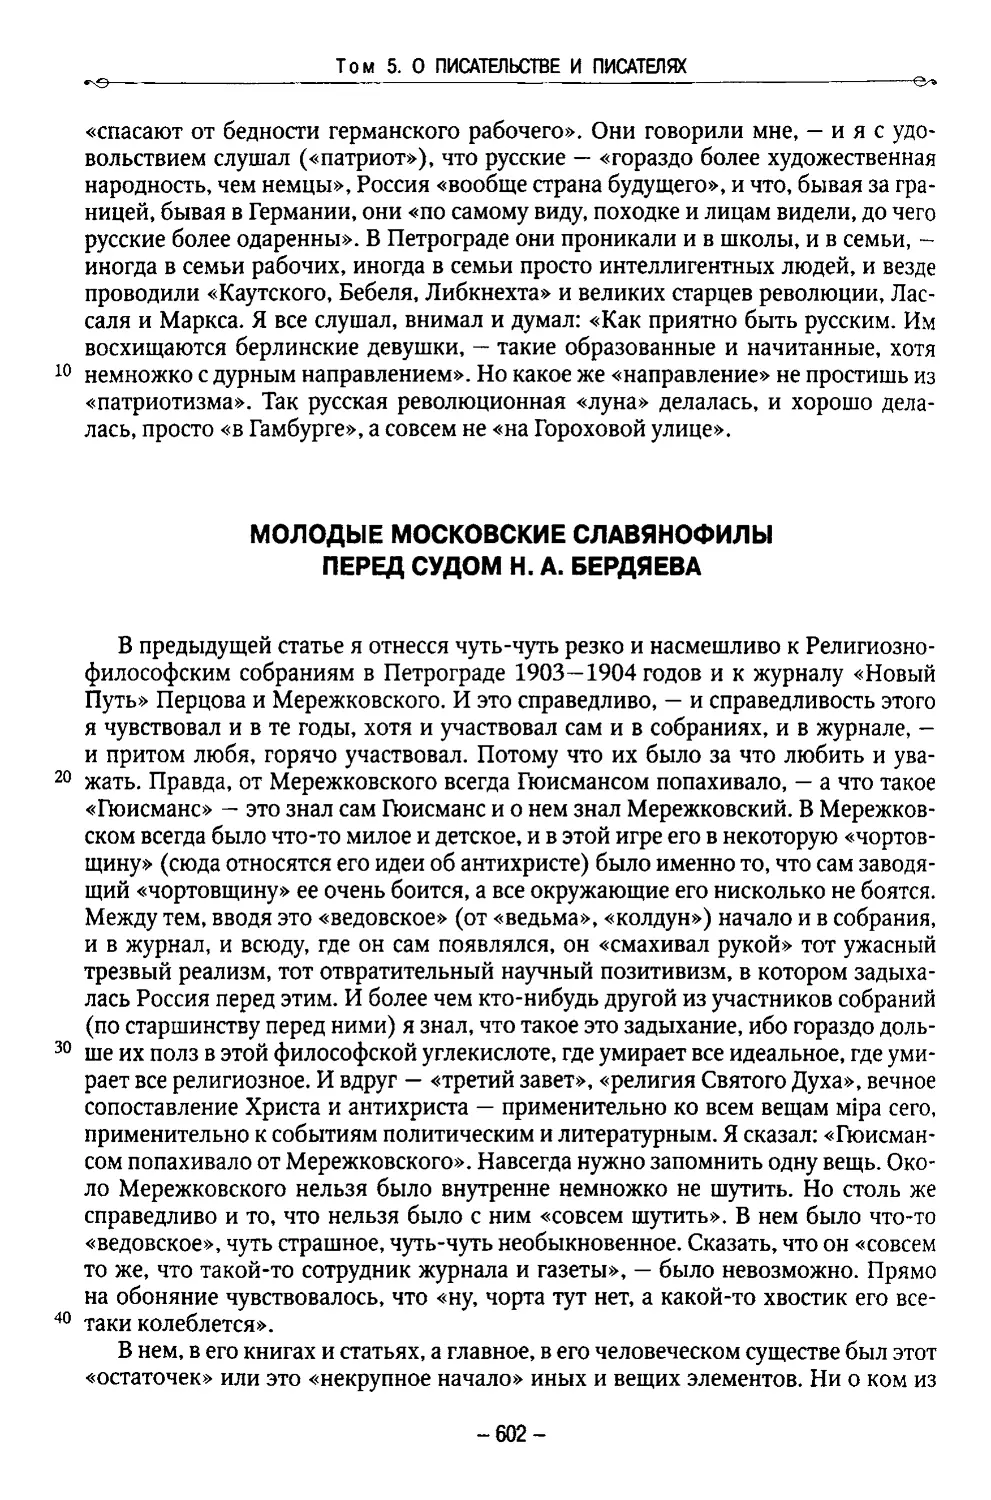 Молодые московские славянофилы перед судом Н. А. Бердяева